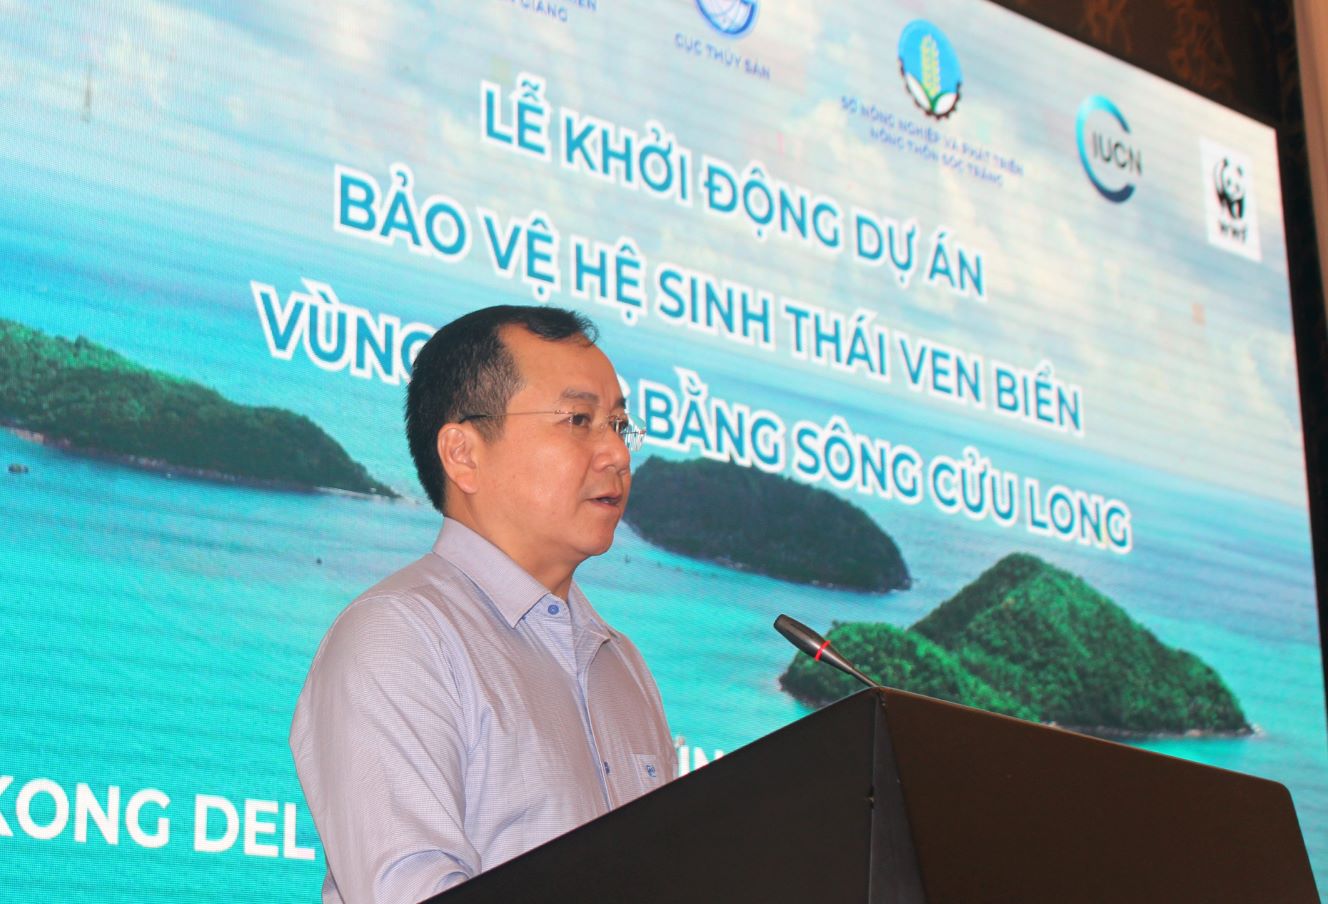 Ông Trần Đình Luân - Cục trưởng Cục Thủy sản phát biểu tại chức lễ khởi động Dự án Bảo vệ hệ sinh thái ven biển Đồng bằng sông Cửu Long. Ảnh: Thanh Mai